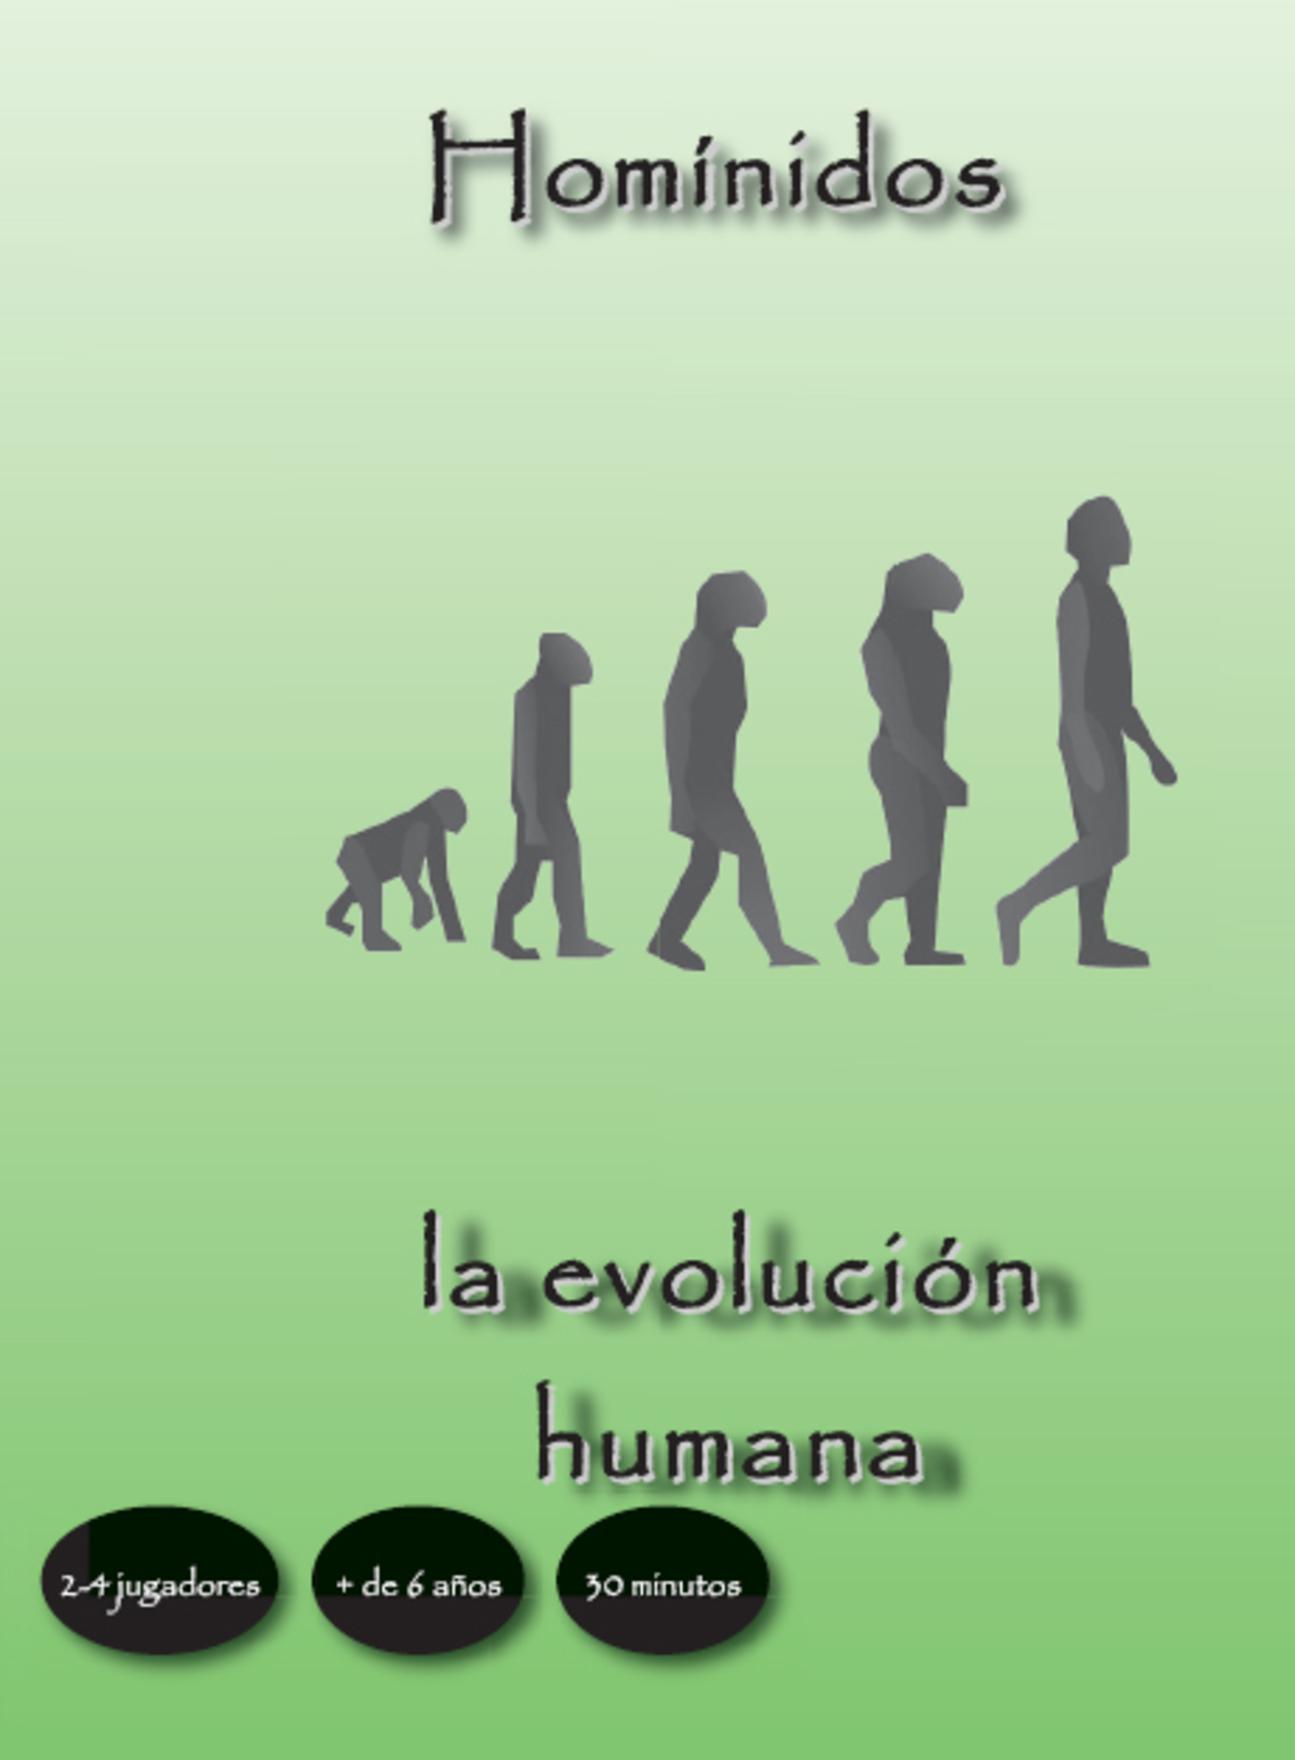 "Homínidos, la evolución humana", juego de mesa diseñado por Gregori Navarro